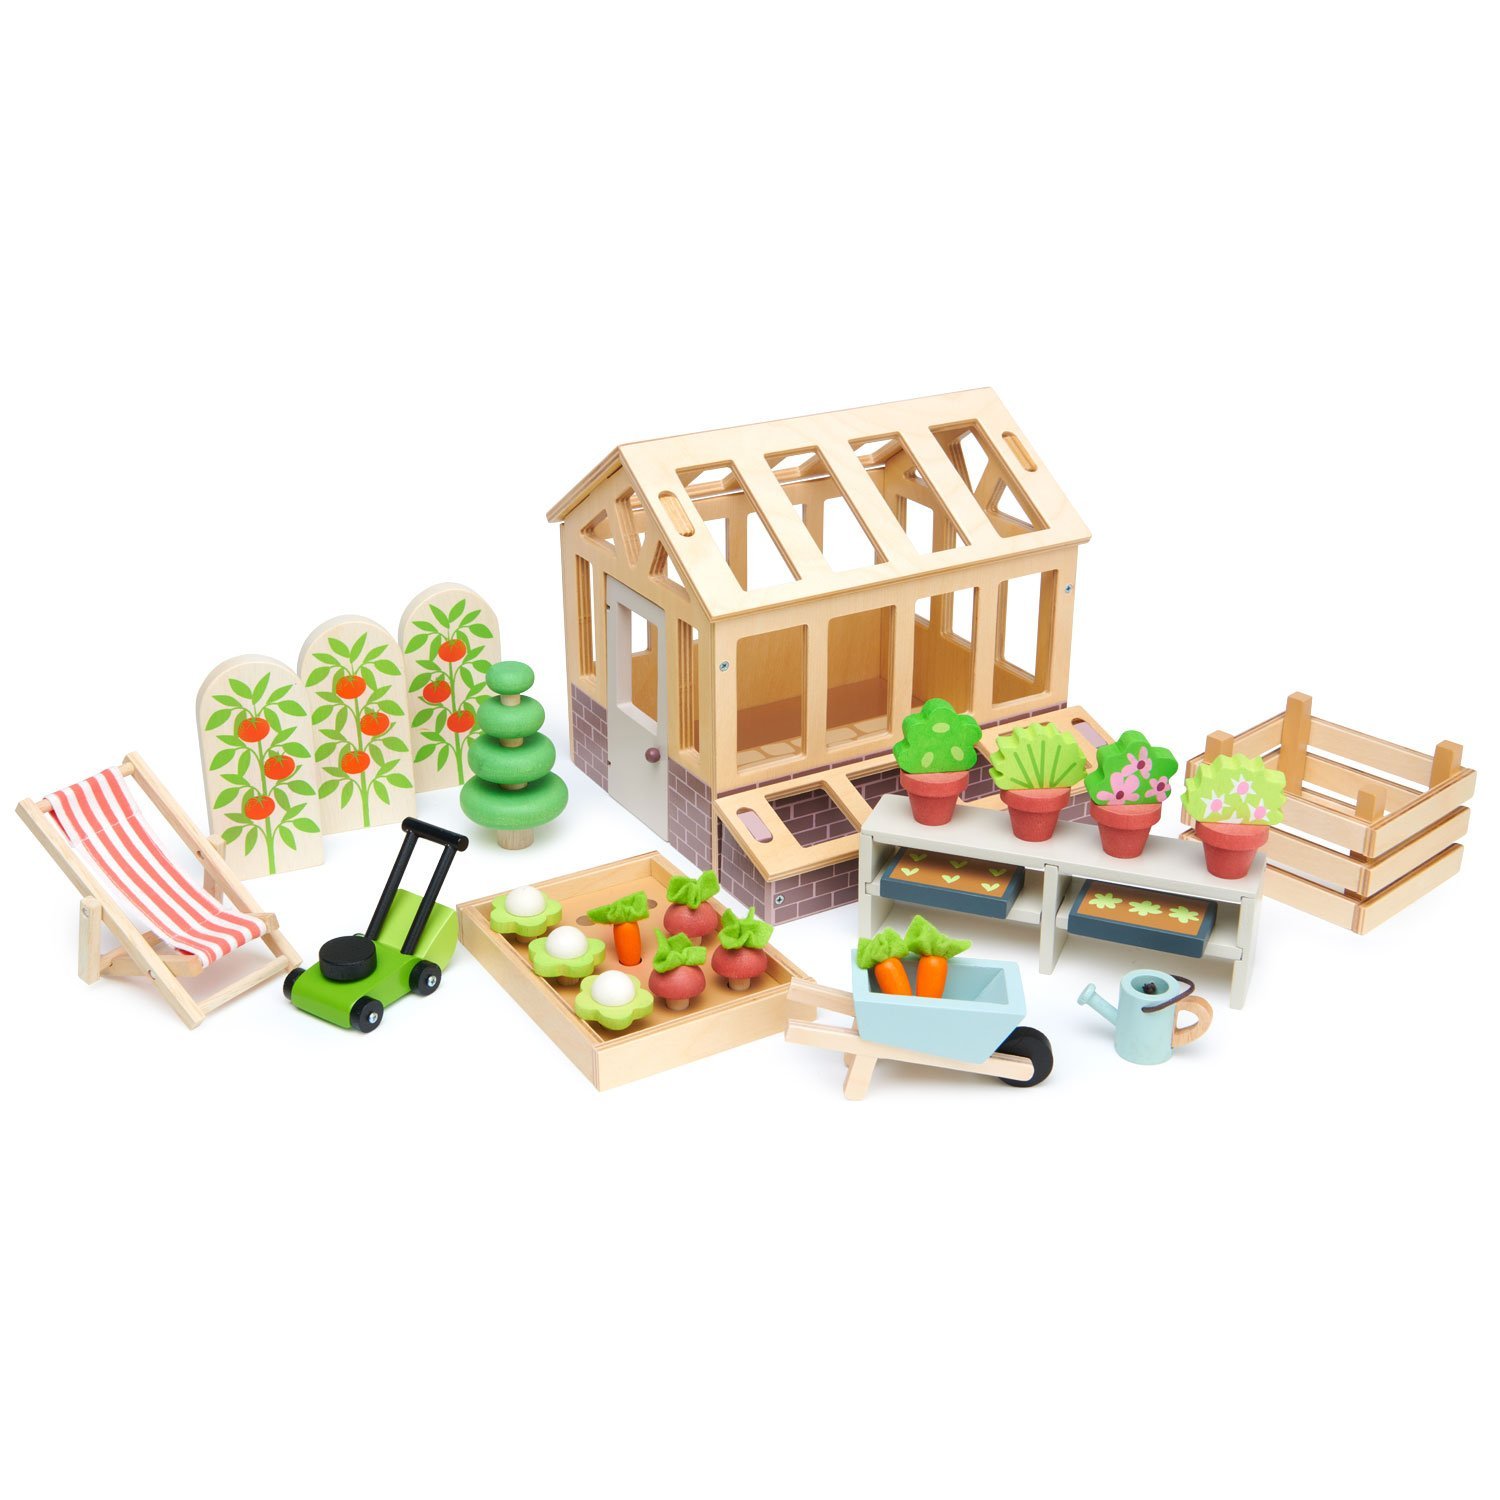 Kit di giocattoli da giardino Montessori con carriola e kit di attrezzi